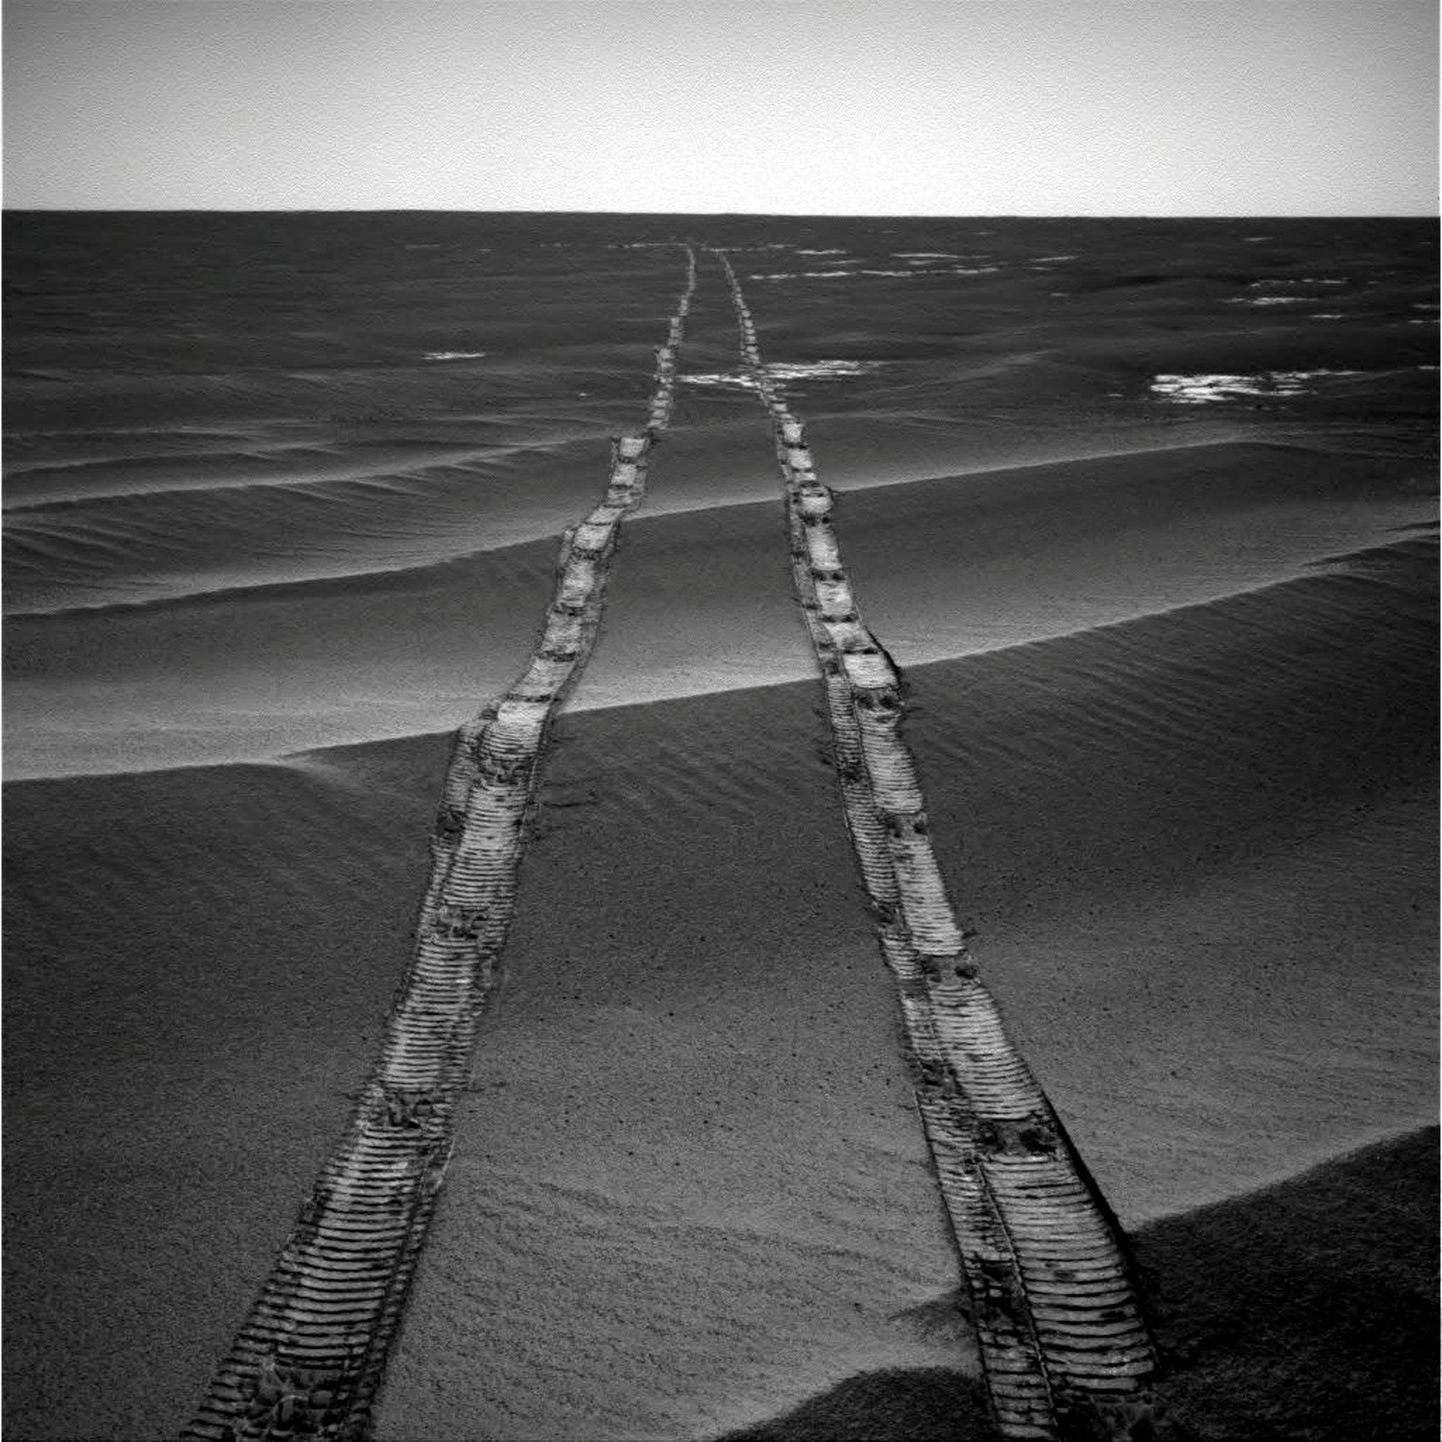 Marsa izpētes robota "Opportunity" atstātās pēdas.